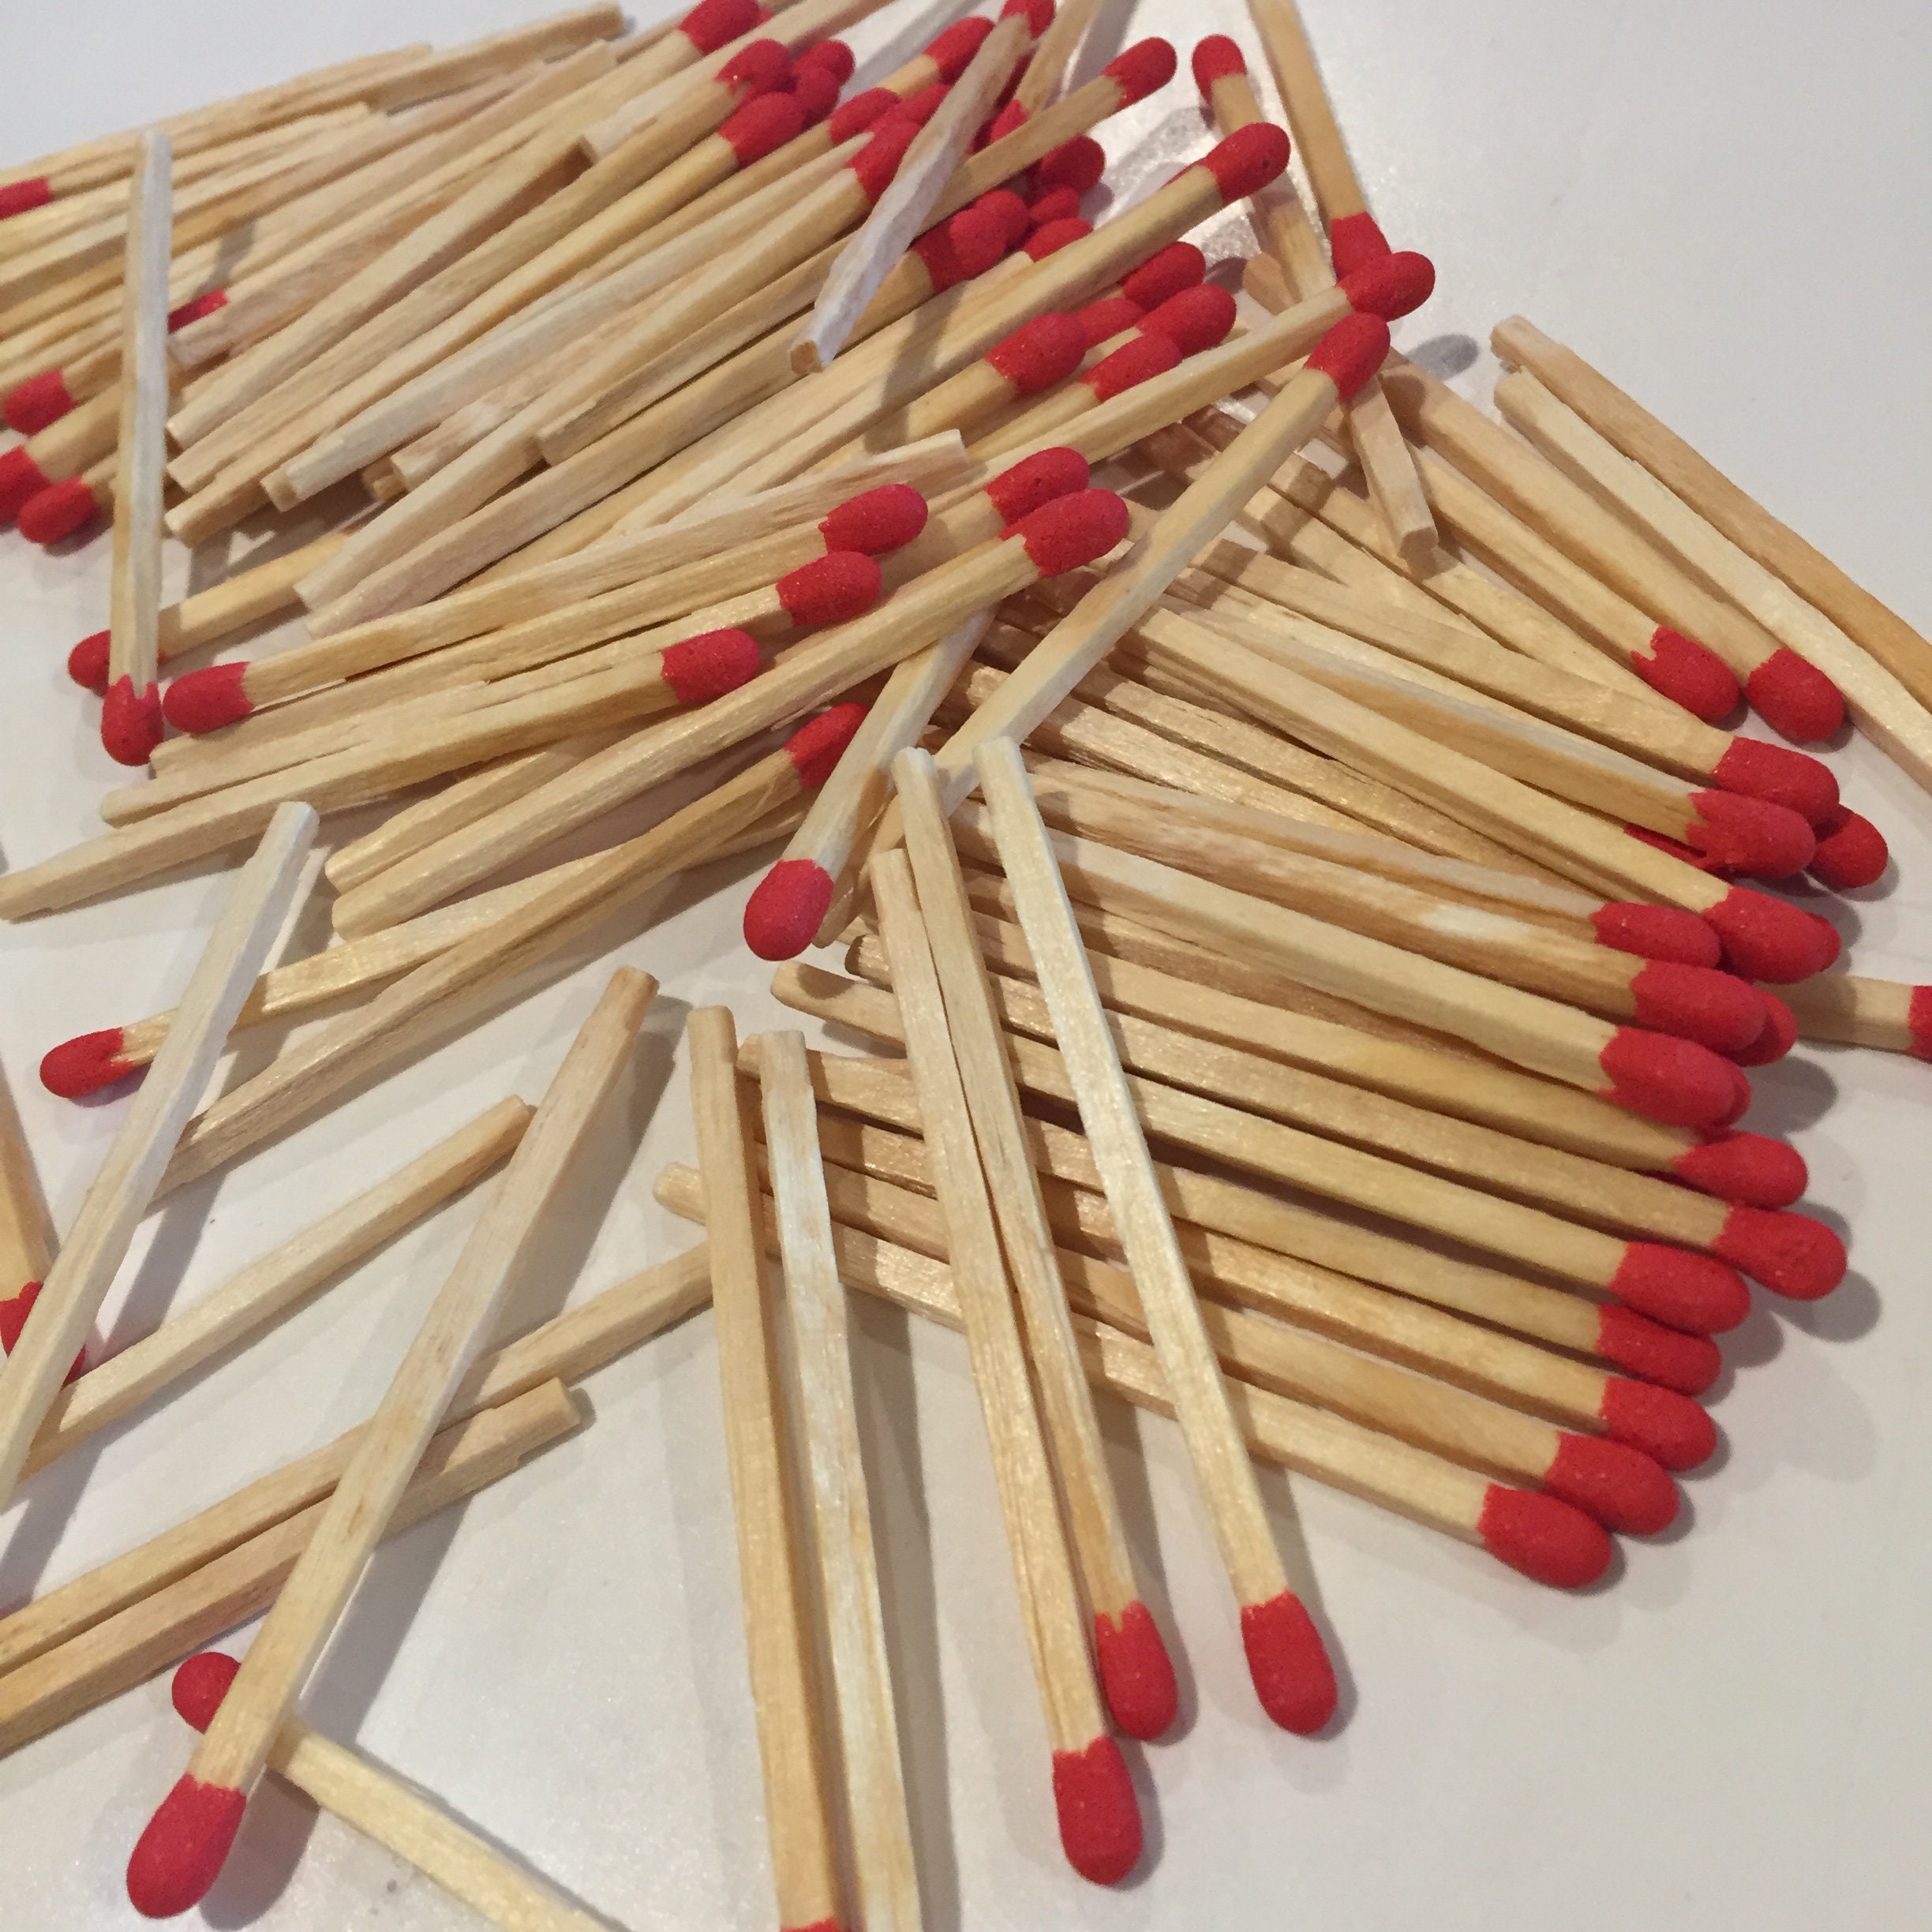 8 Inches Stick Matches Bulk 8 Inches Stick Matches Bulk